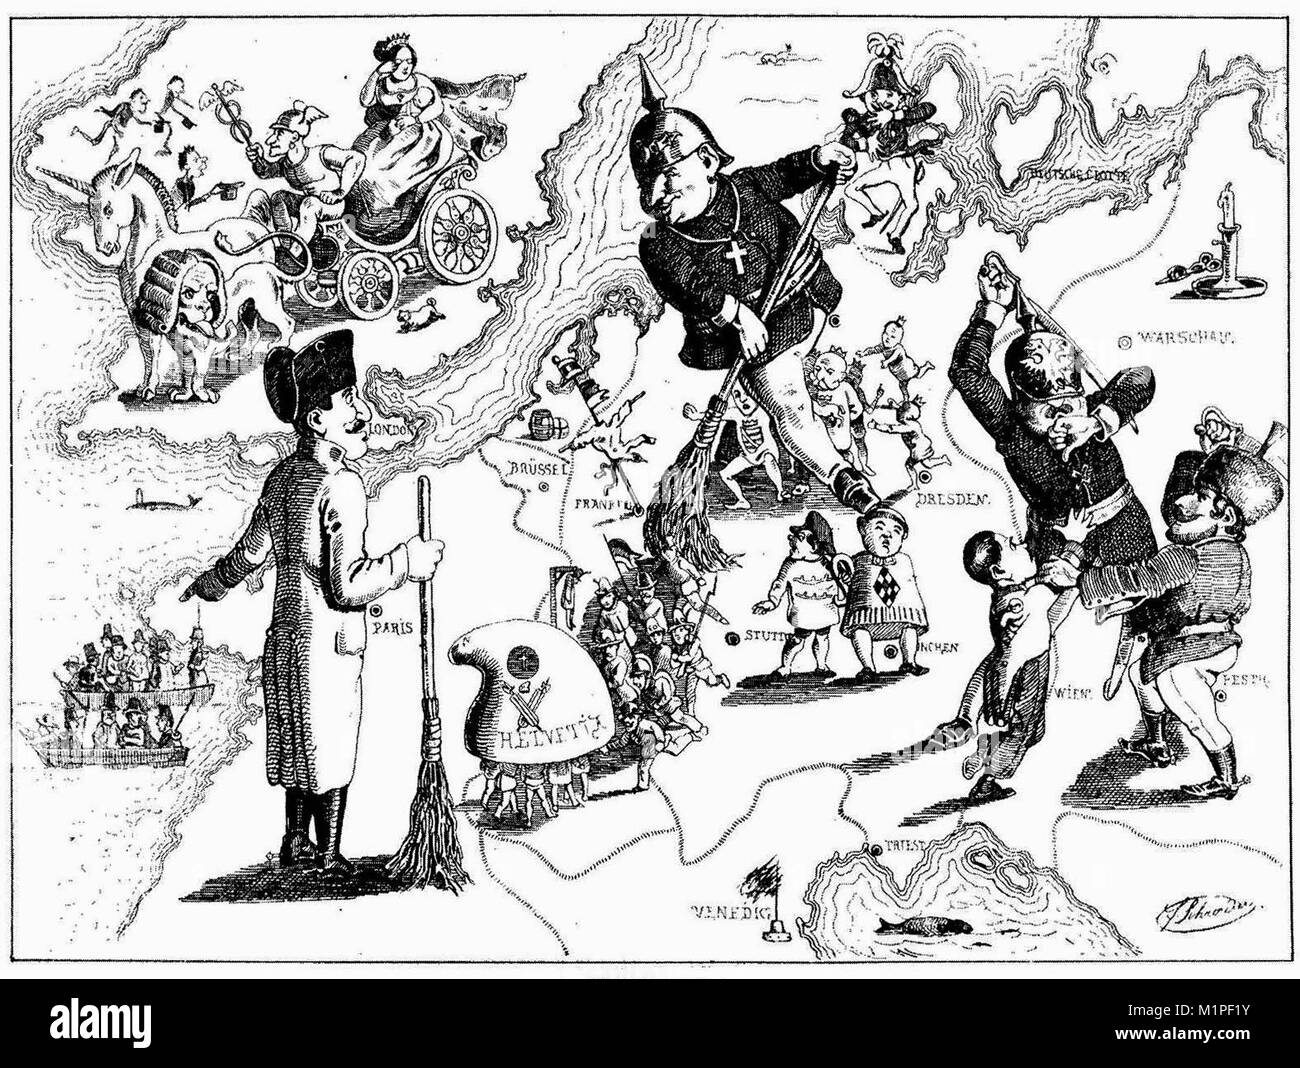 Une caricature par Ferdinand Schröder sur la défaite des révolutions de 1848-1849 en Europe Banque D'Images